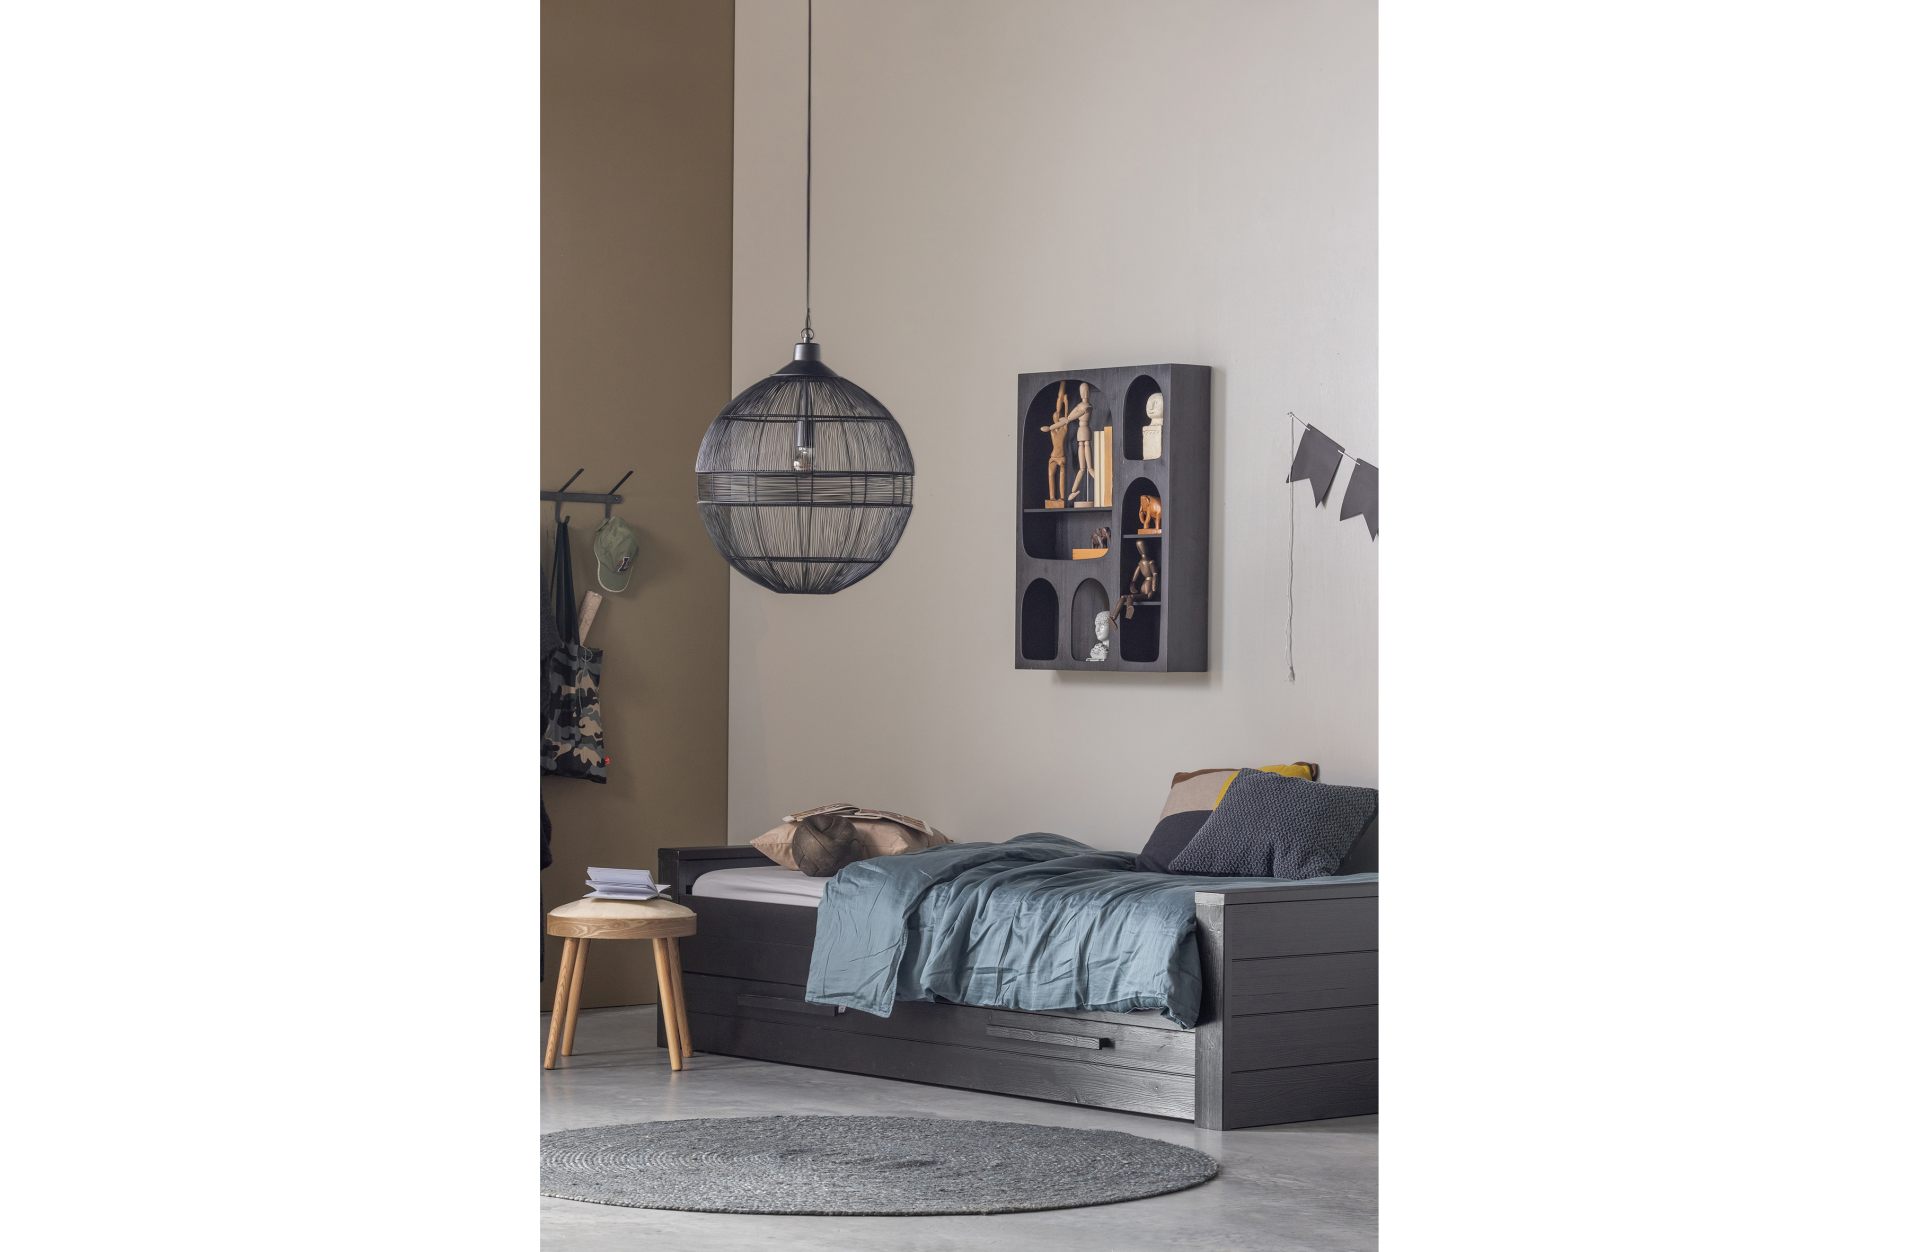 Die Hängelampe Enes überzeugt mit ihrem modernen Design und macht jeden Wohnbereich zu einem echten Hingucker. Gefertigt wurde die Lampe aus Metall, welches einen schwarzen Farbton besitzt.